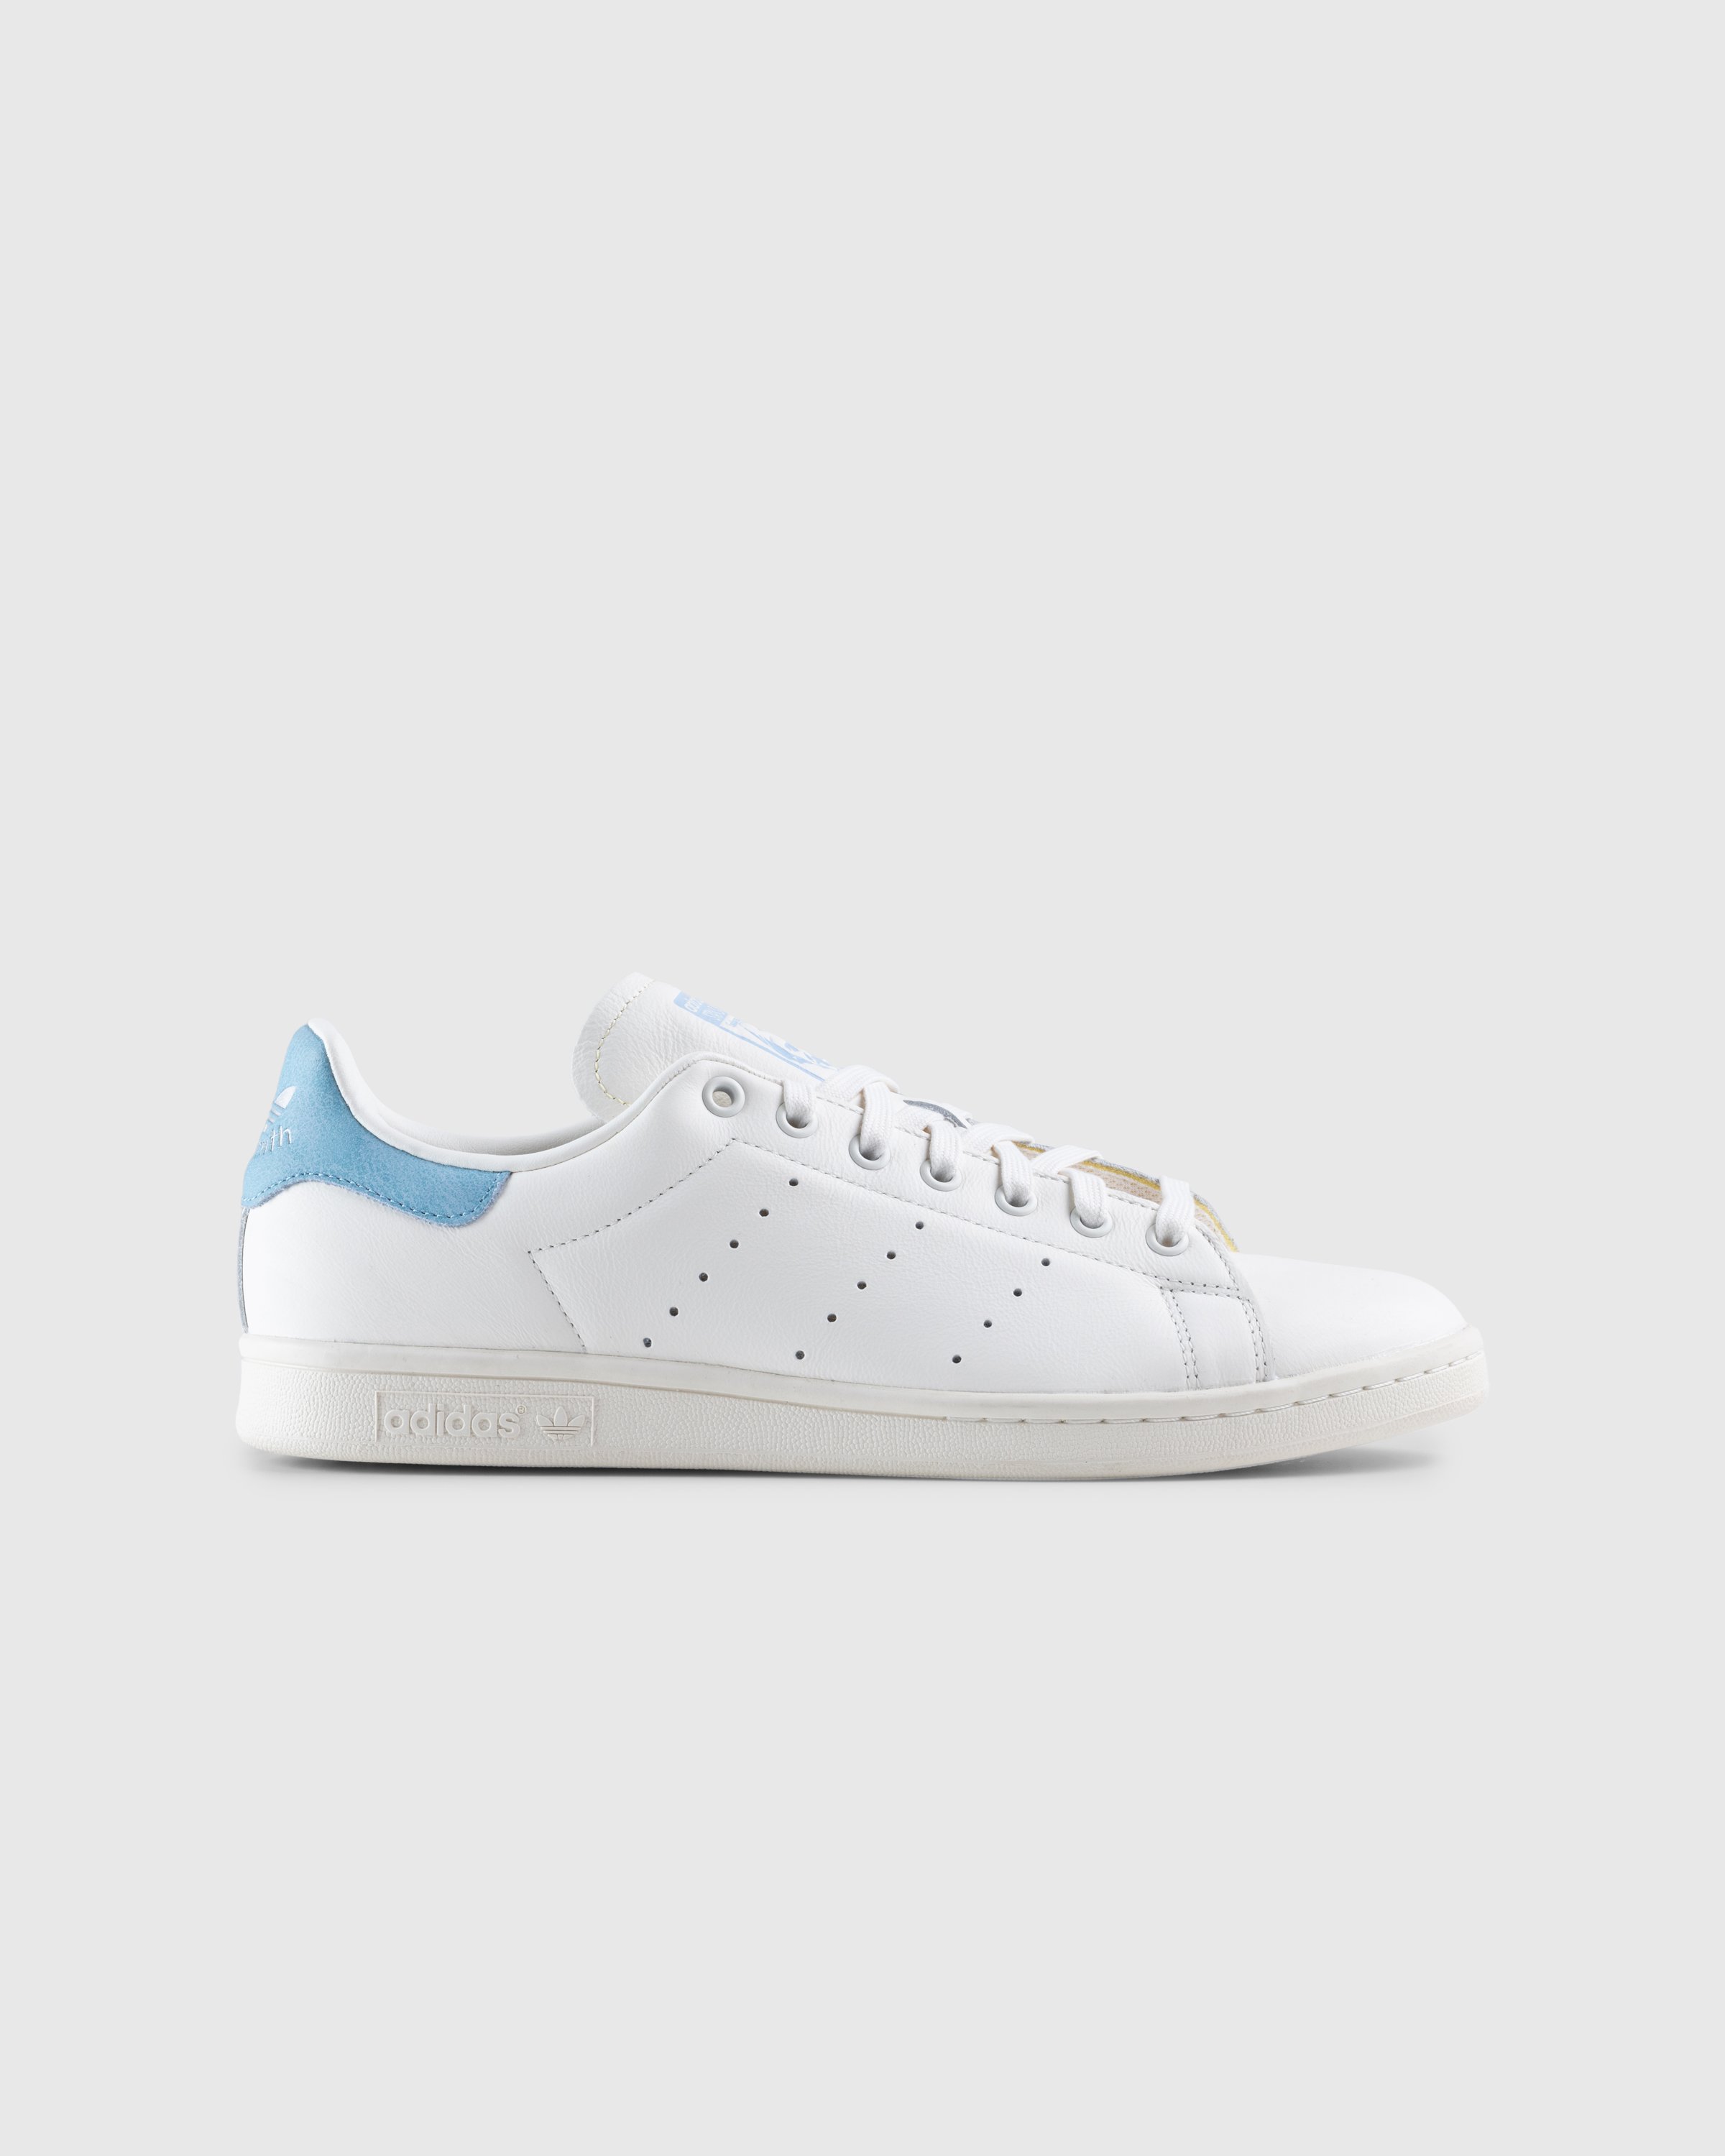 Adidas - Stan Smith White Blue - Footwear - White - Image 1